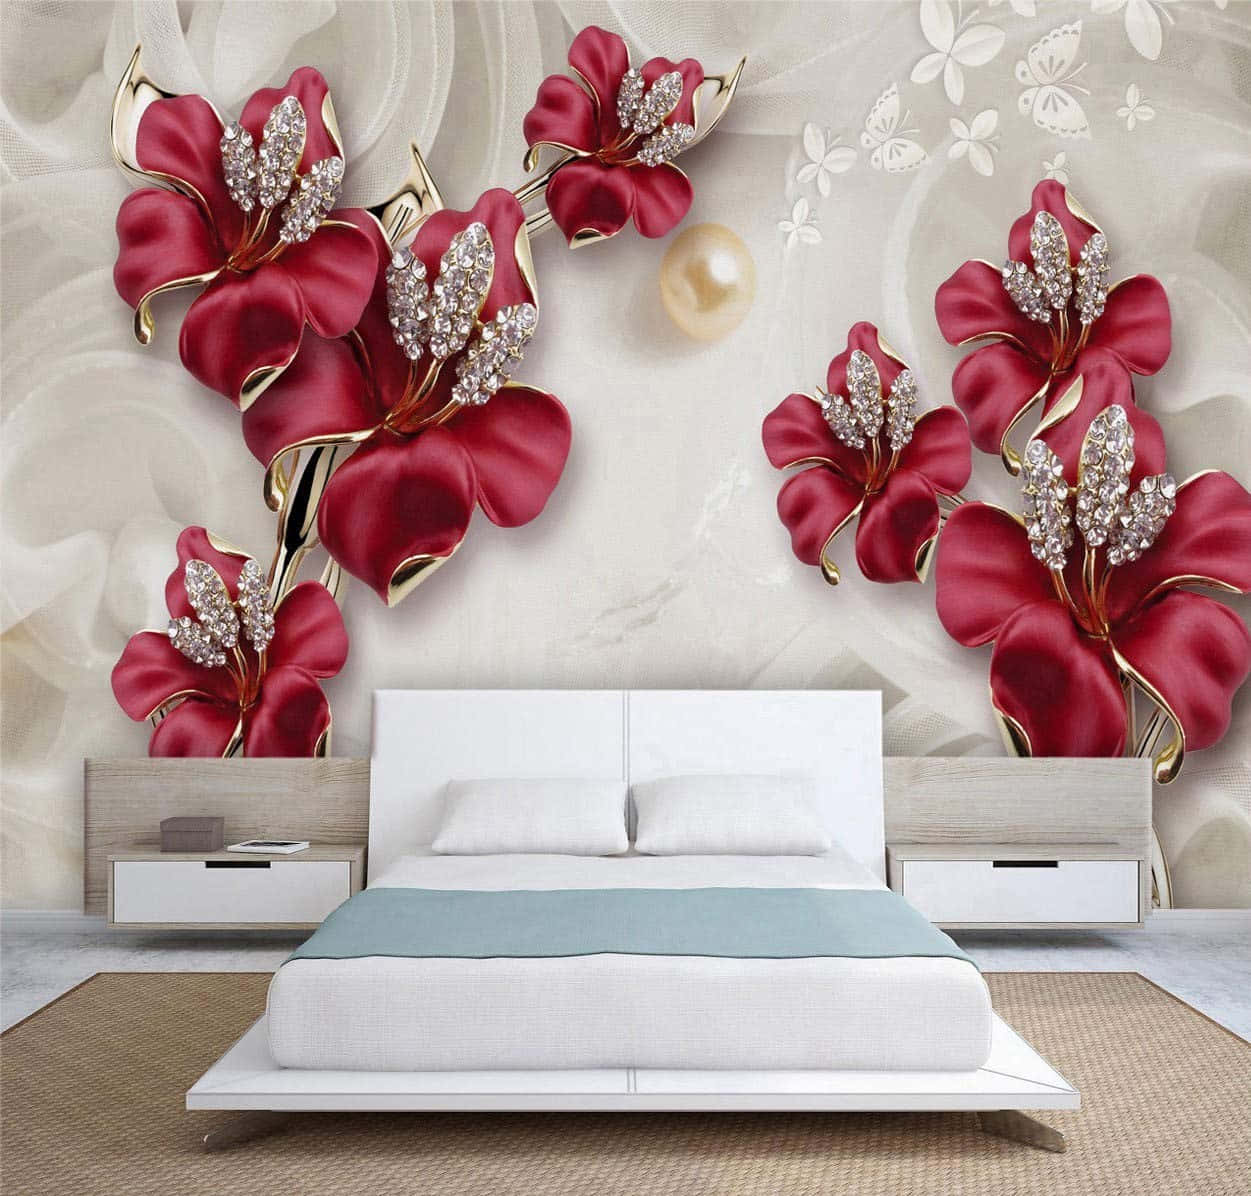 Serenity In Sleep: Elegant White Floating Bed Illuminated Amid Oversized Flowers